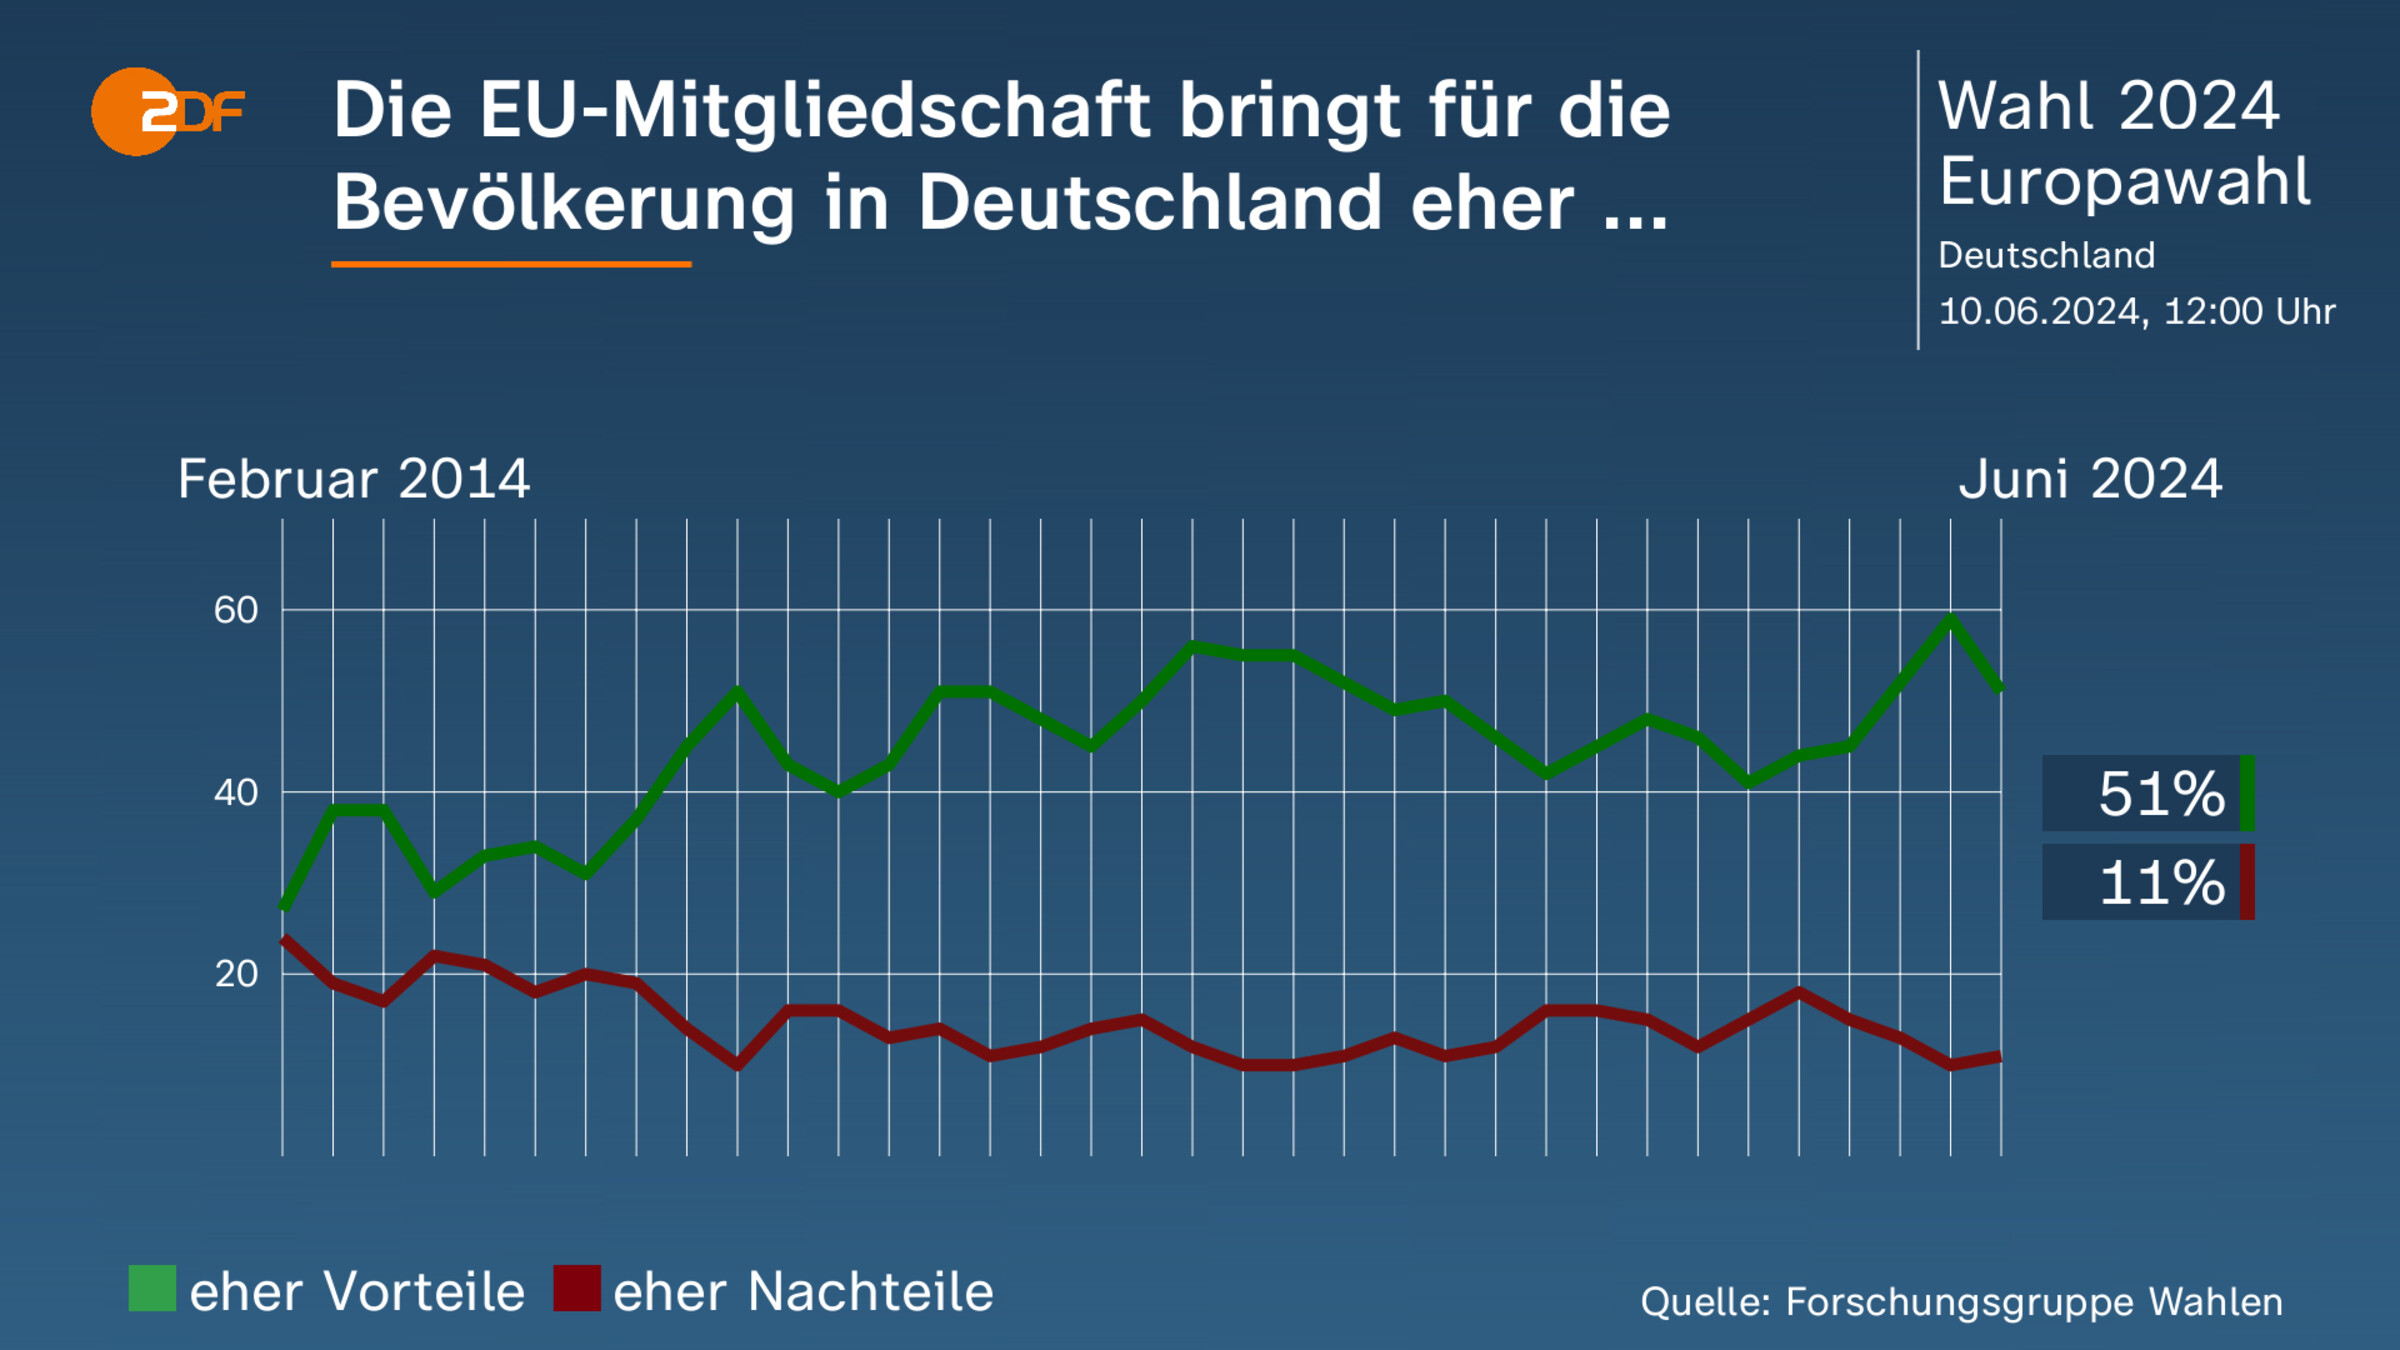 Die EU-Mitgliedschaft bringt für die Bevölkerung in Deutschland eher ... 